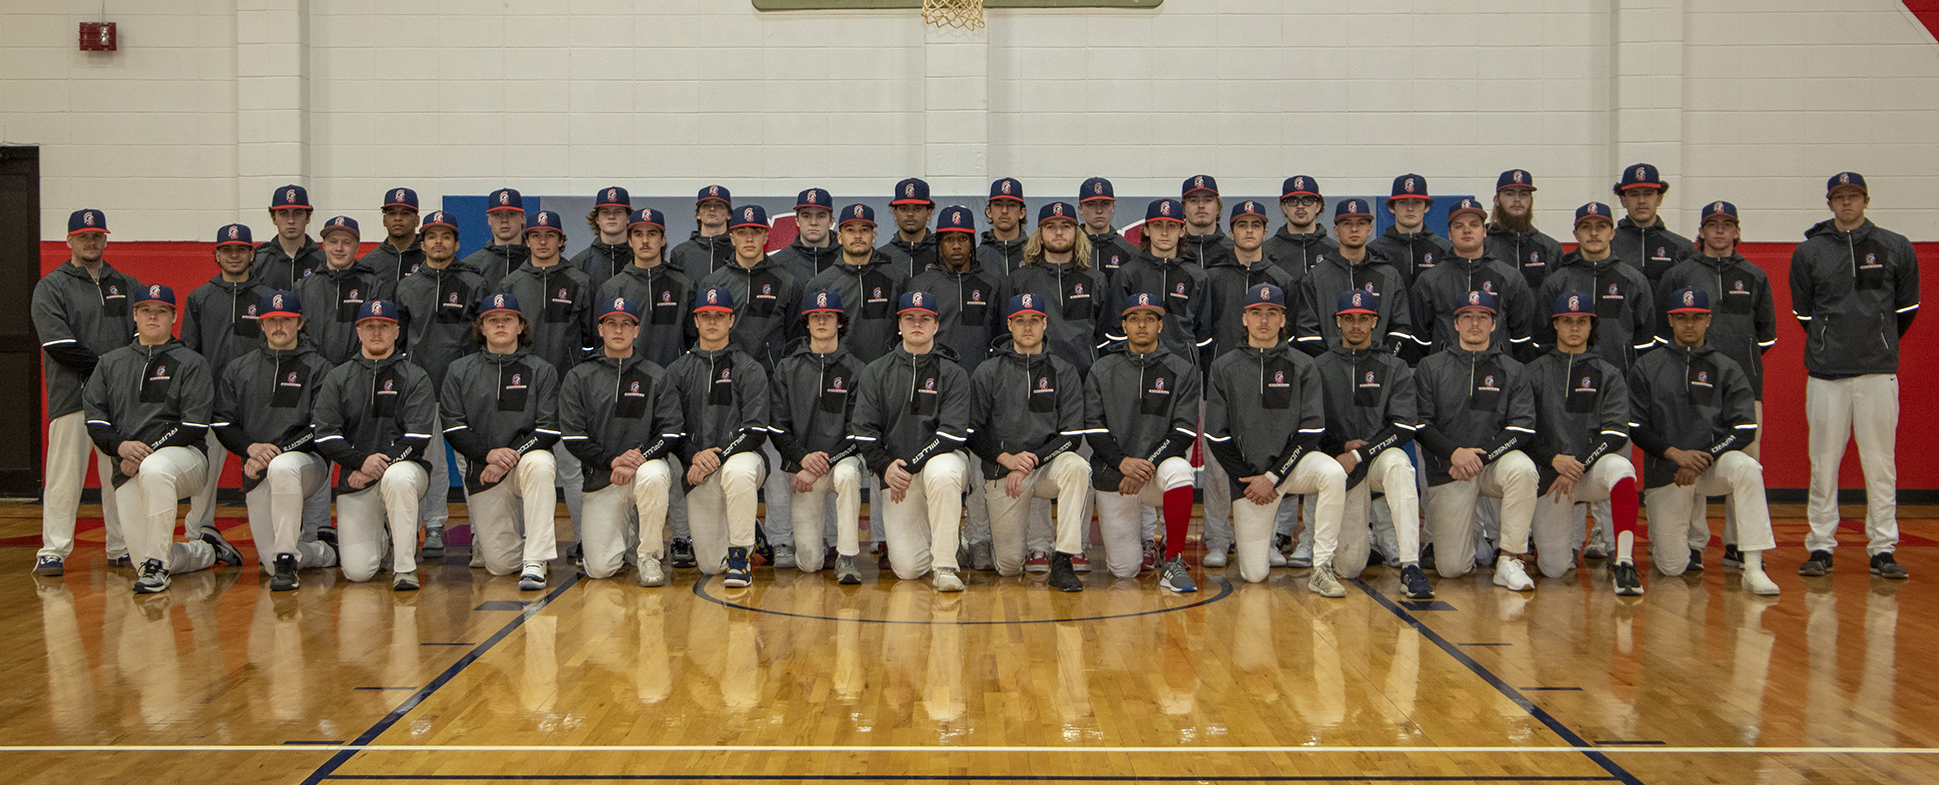 2022-23 Spartan baseball team and coaches